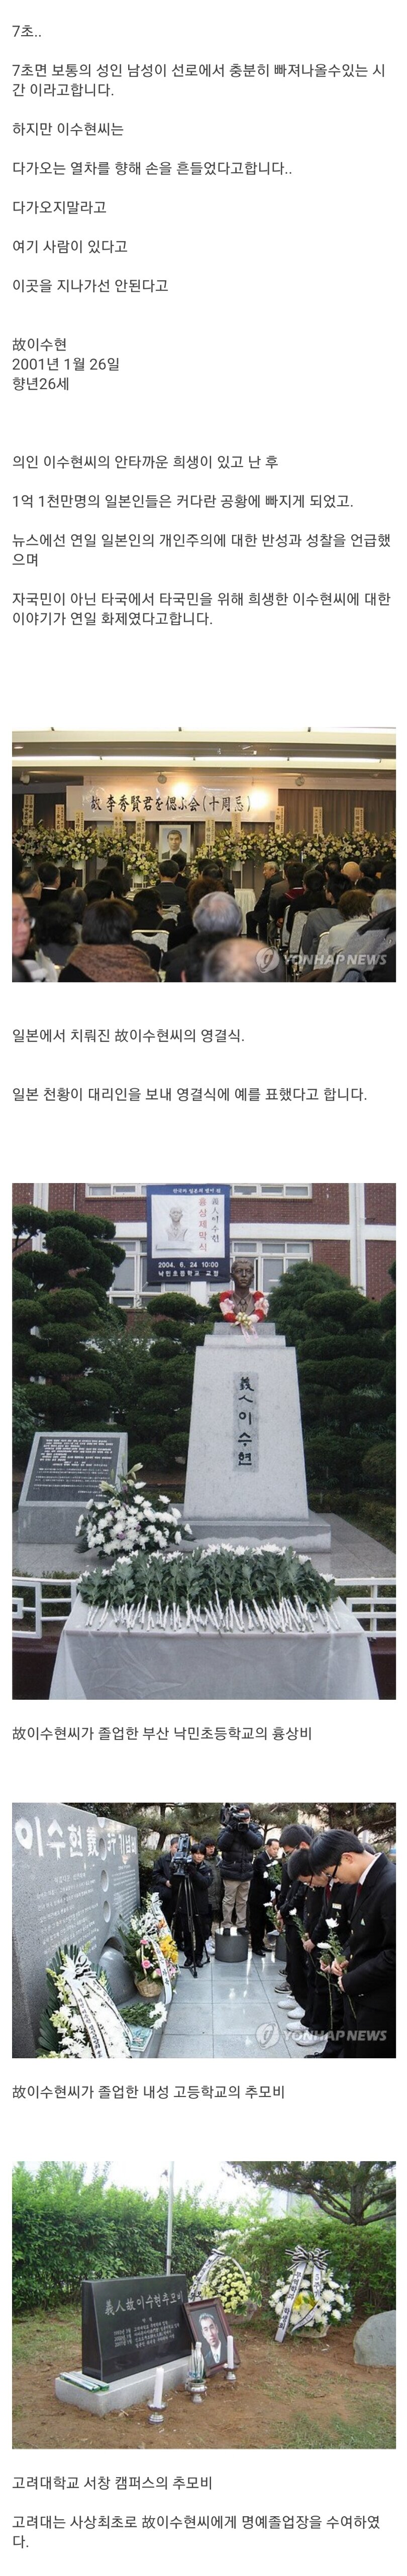 일본인을 구하기 위해 목숨을 건 한국인.jpg